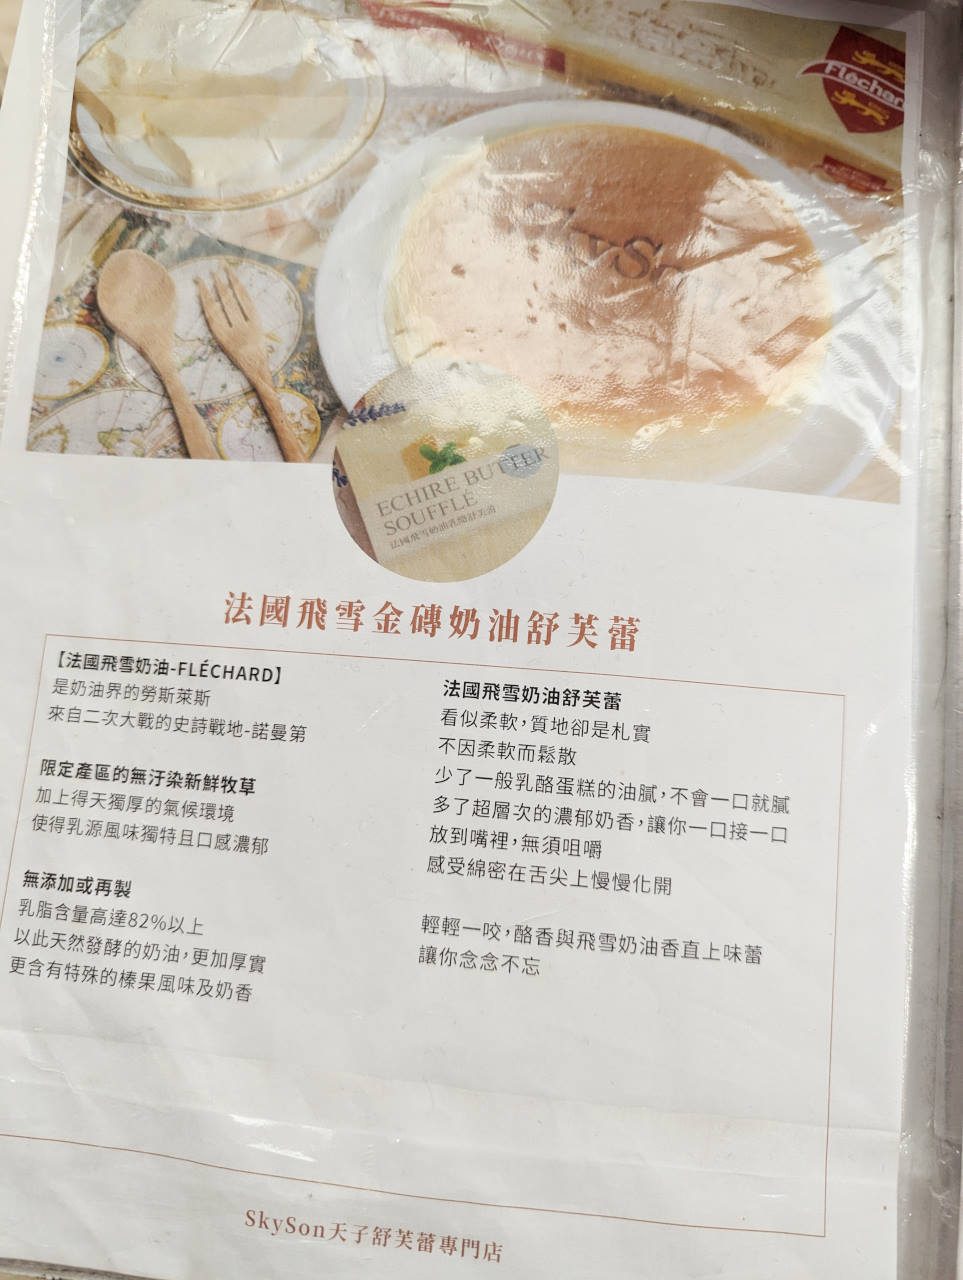 SkySon天子舒芙蕾，法式高級甜點百吃不膩，台北SOGO終於買得到的烏日美食名店伴手禮